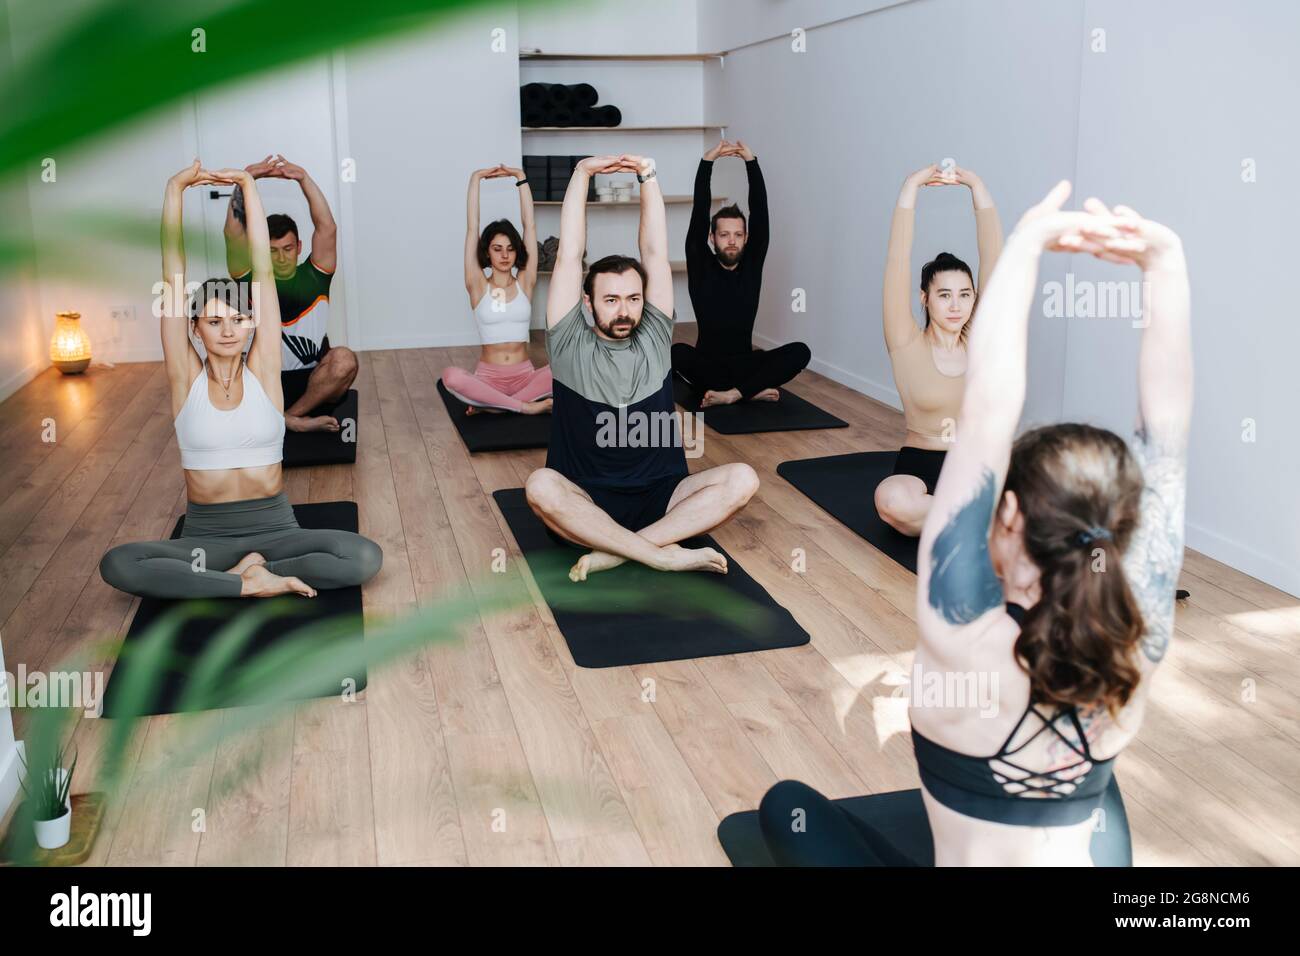 Persone che lavorano sodo che praticano lo yoga in un gruppo, facendo allungamenti in posa facile in un grande studio. Davanti a uno strumentore, ragazza con tatuaggio alle spalle. Foto Stock